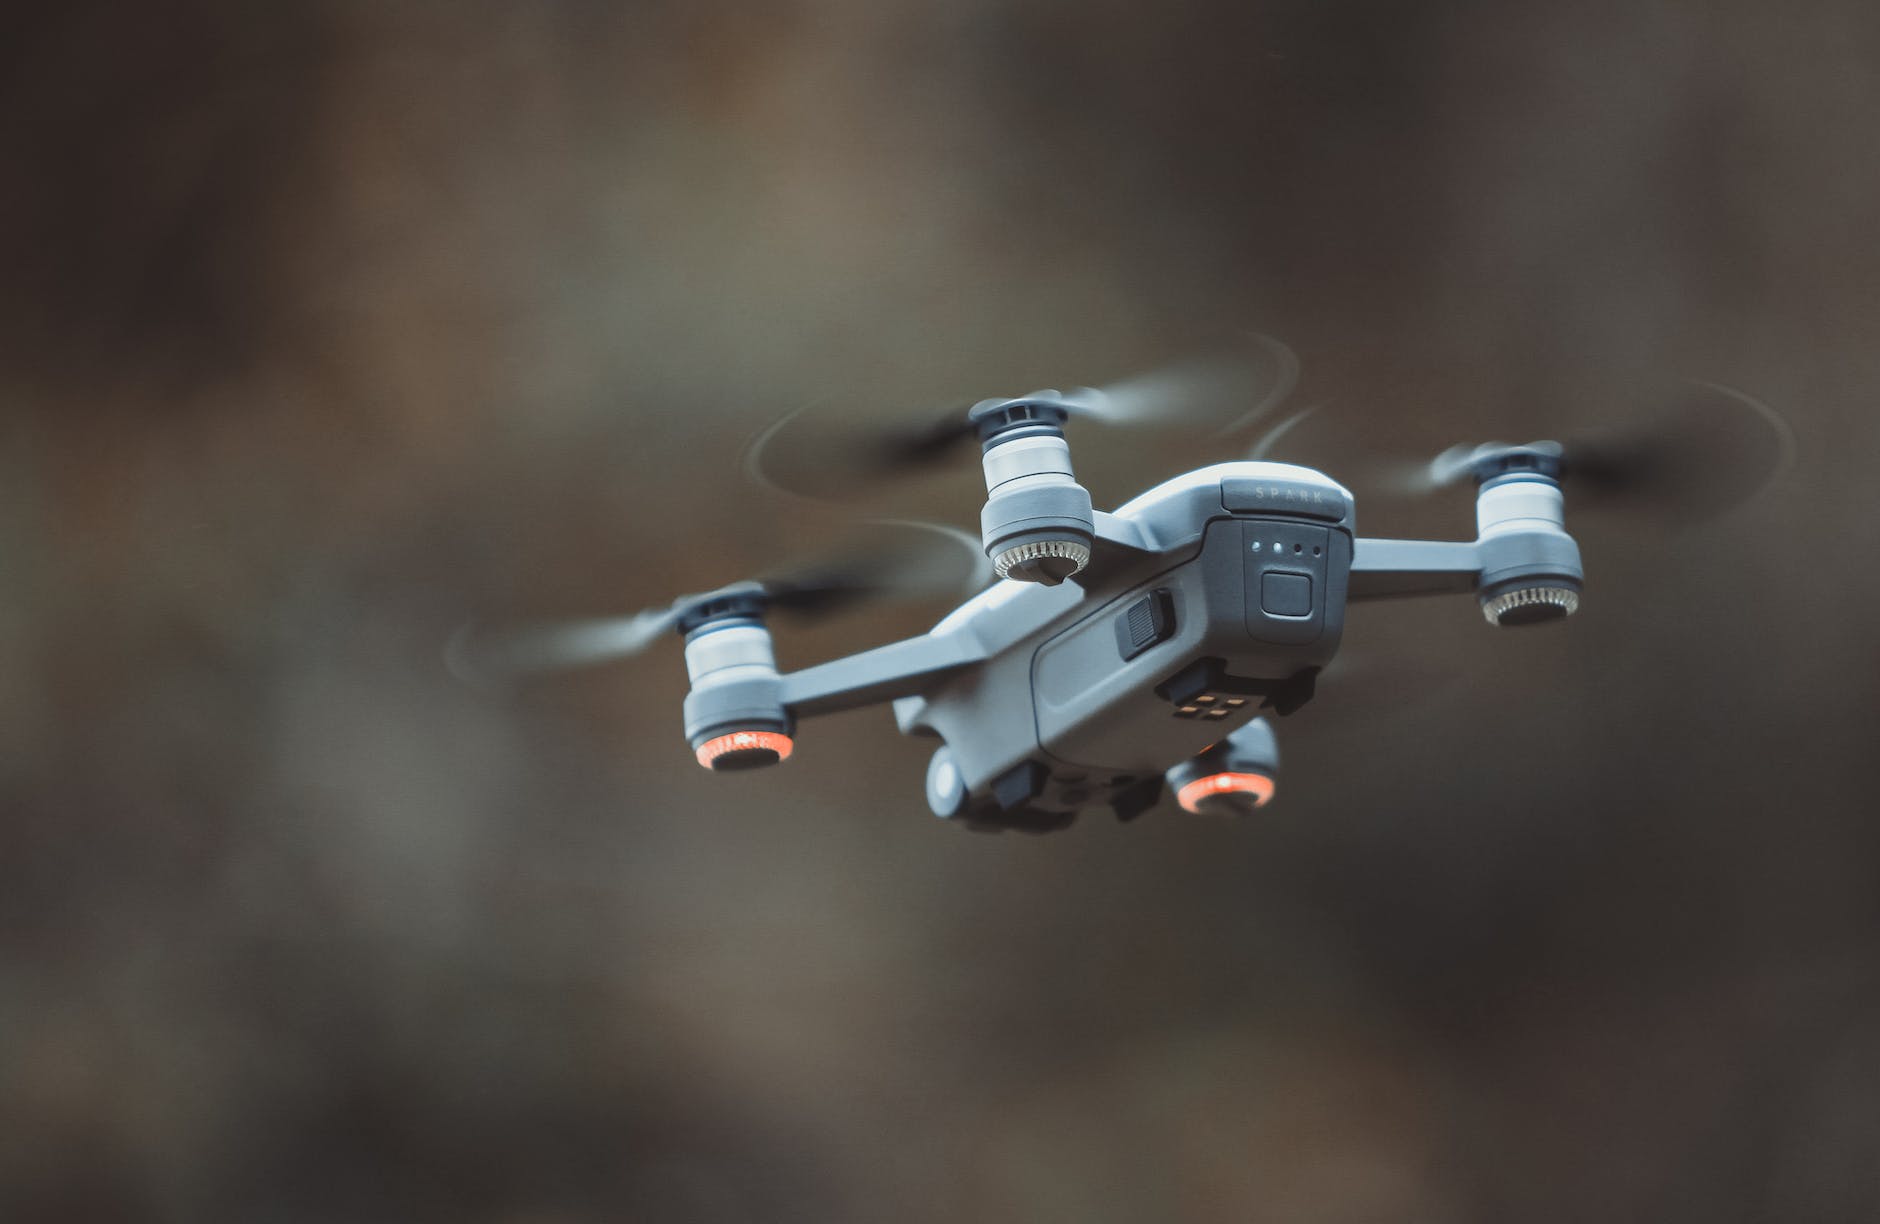 grey quadcopter drone